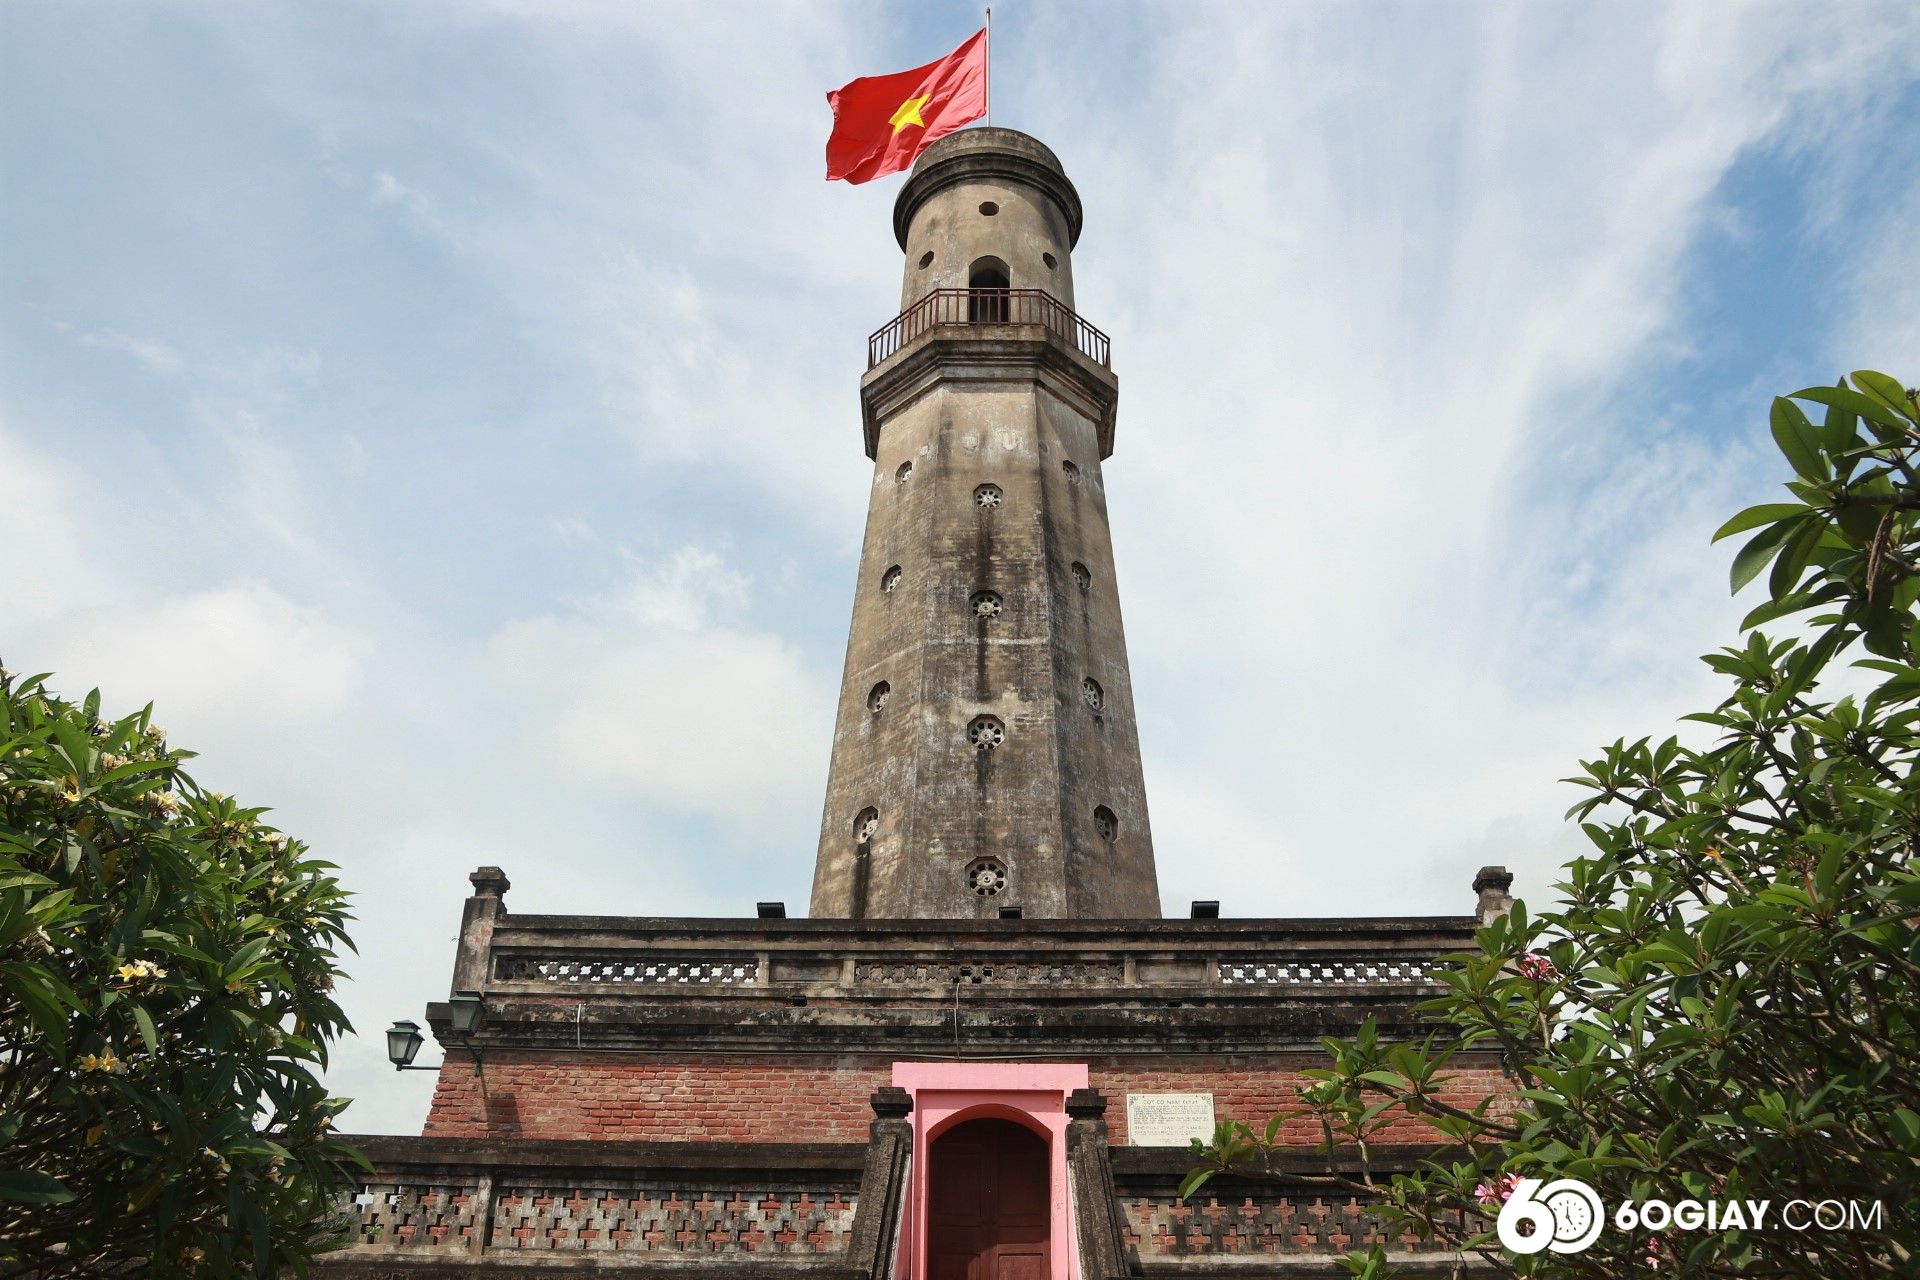 Cột cờ Nam Định có chiều cao 23,84m được xây bằng gạch nung già, màu đỏ sẫm.